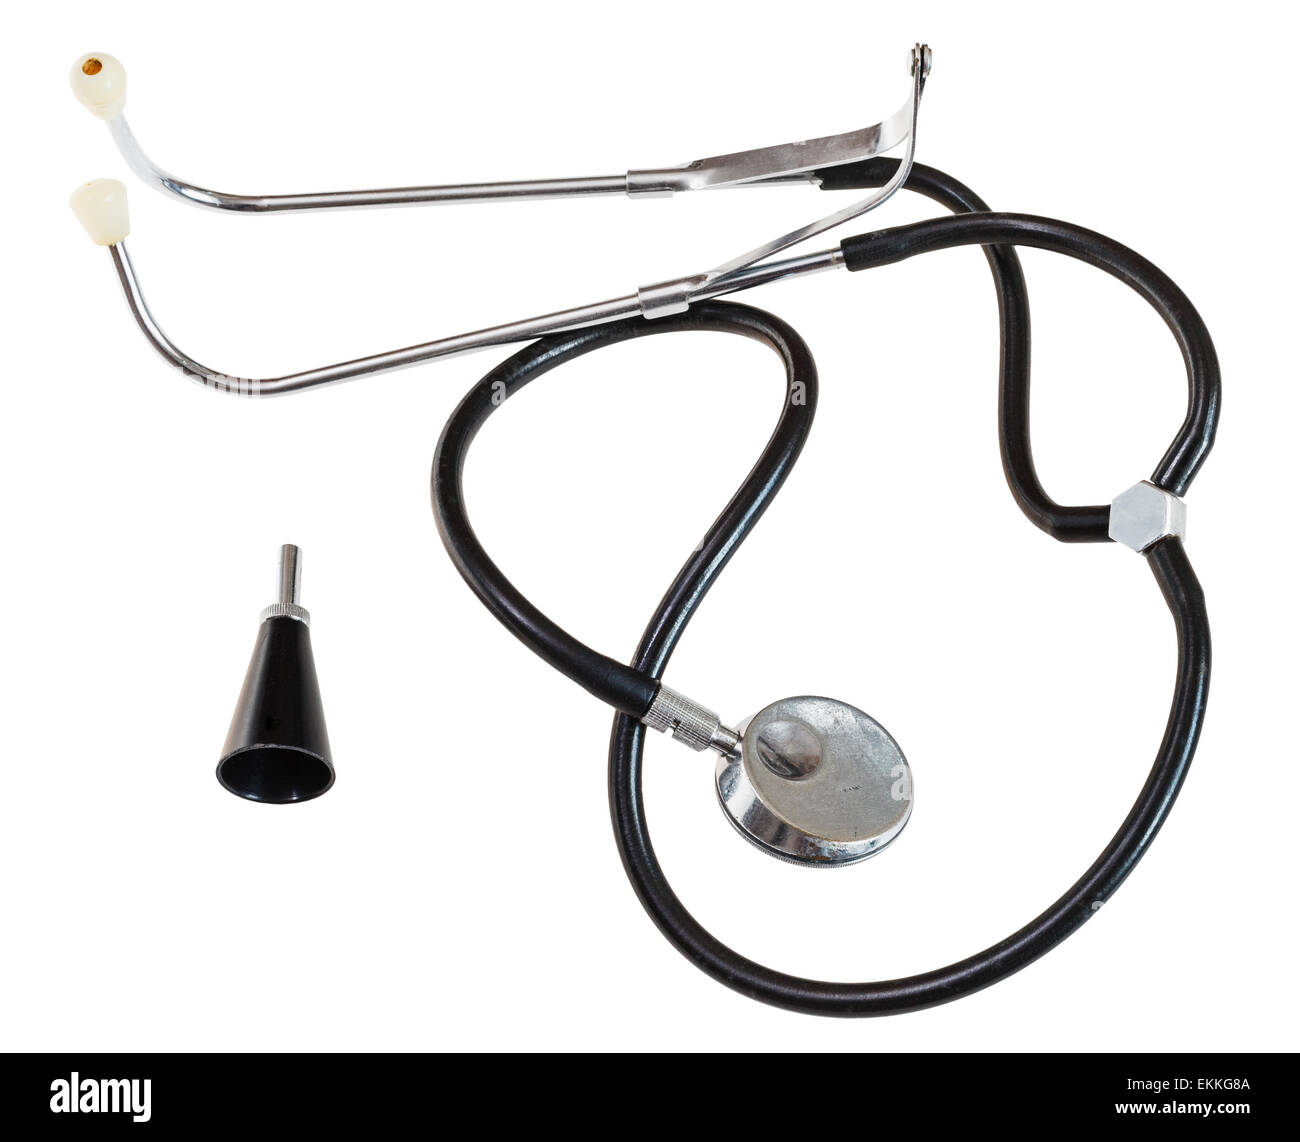 used modern stethoscope isolated on white background Stock Photo